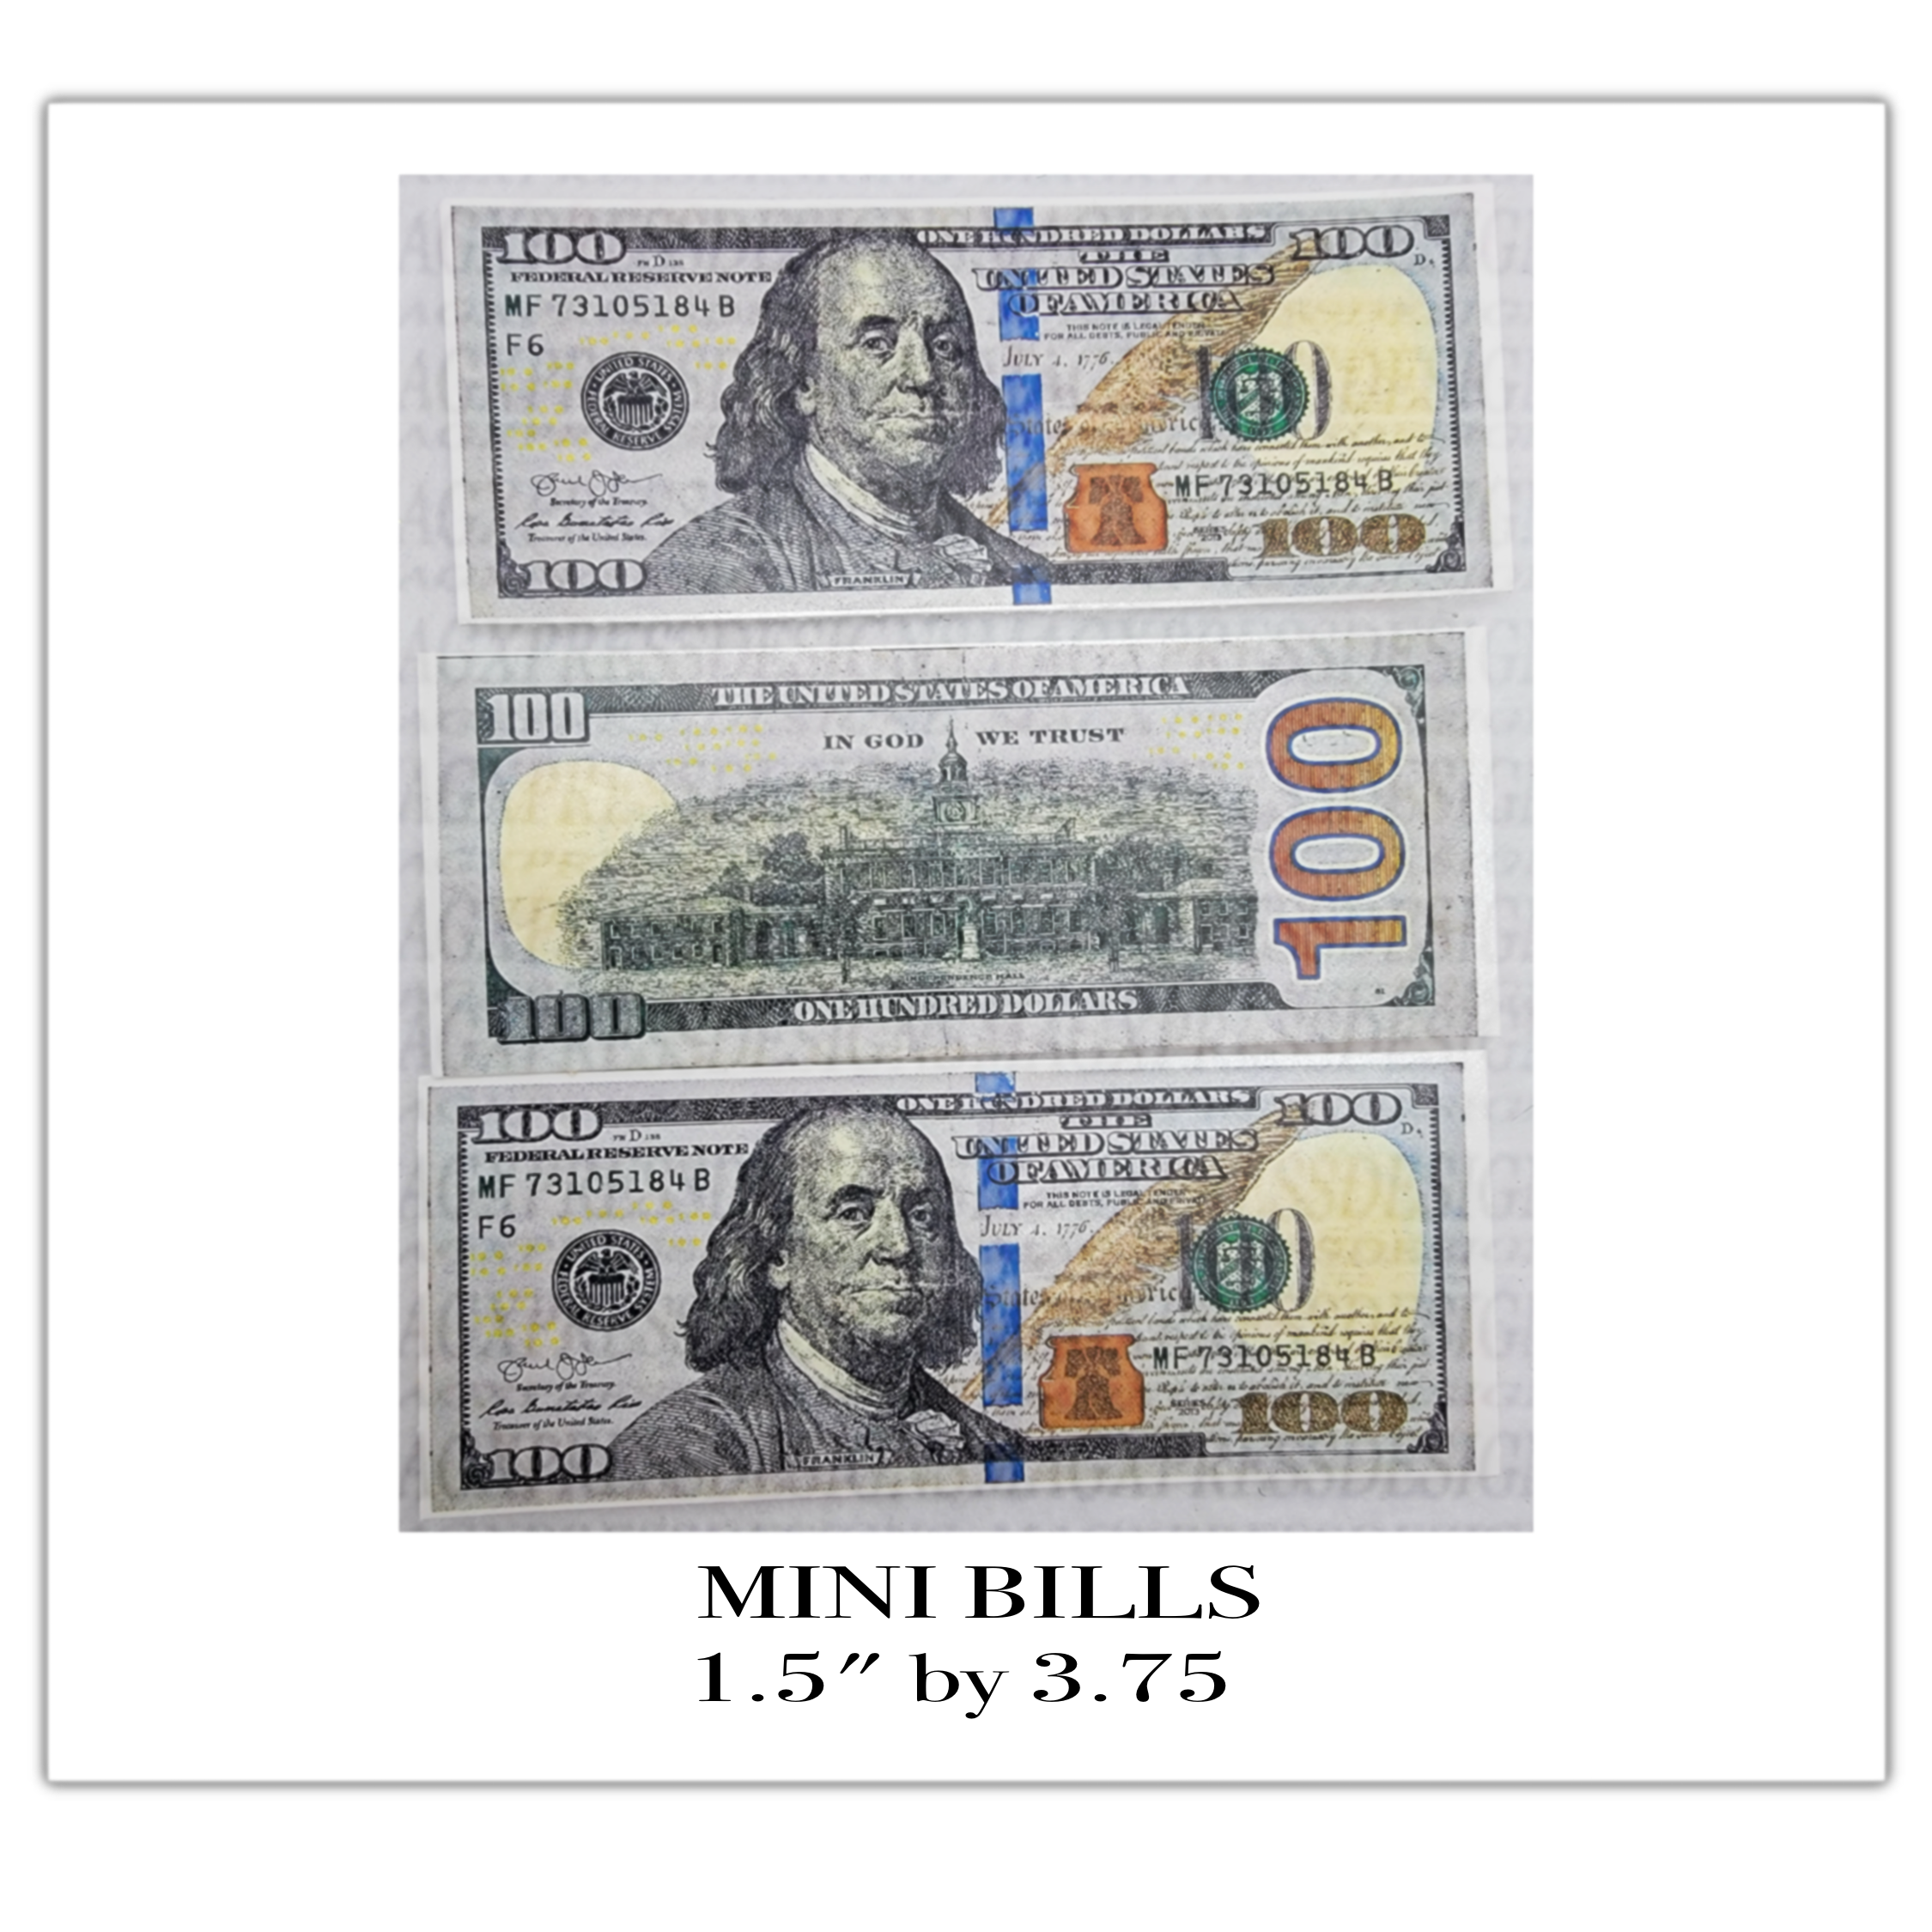 Benjamin’s Hundred bill